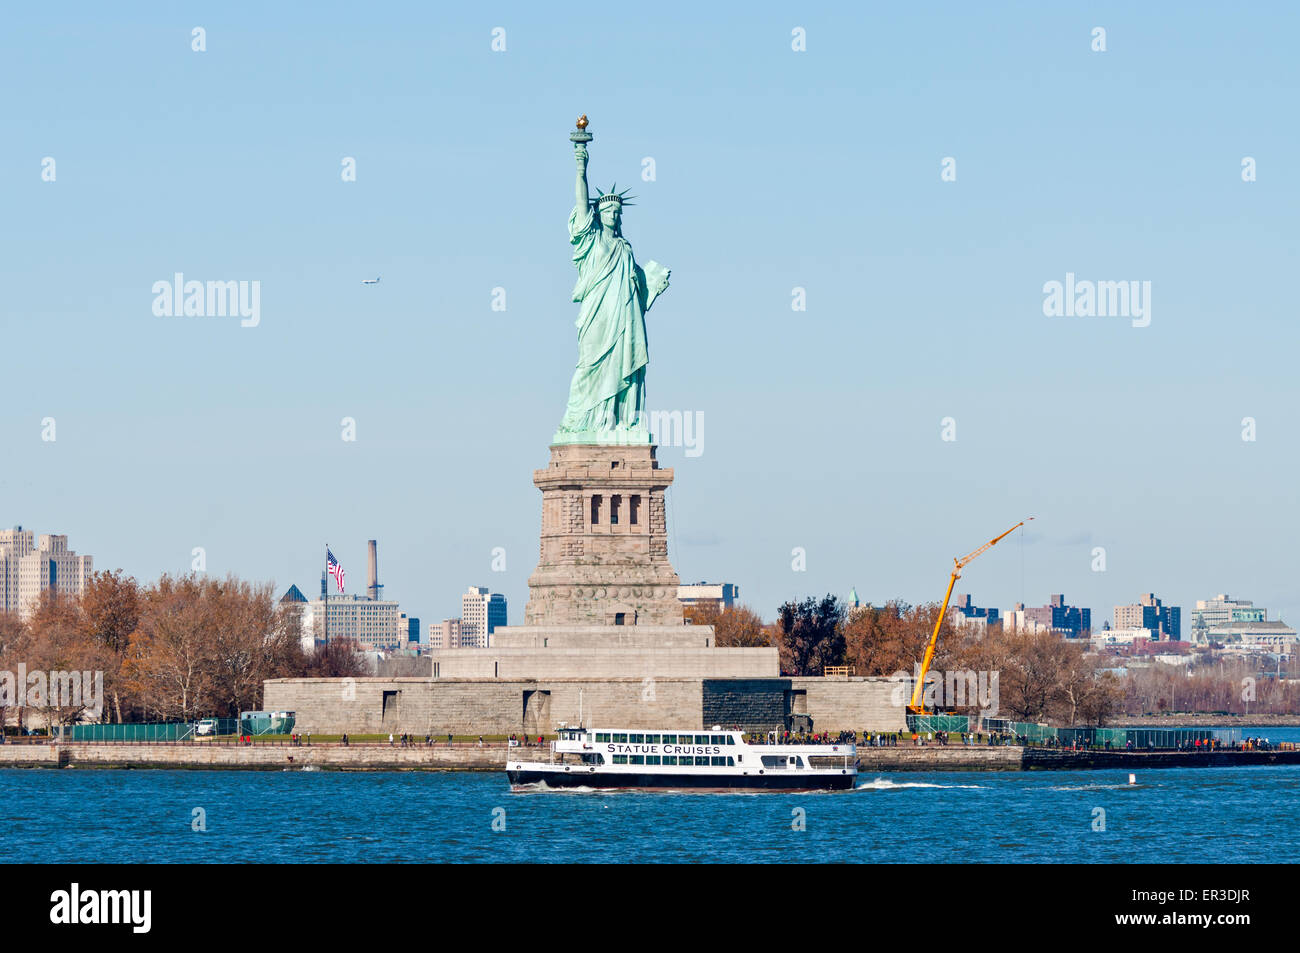 La estatua cruceros barco con los turistas que pasan por la estatua de la Libertad Foto de stock